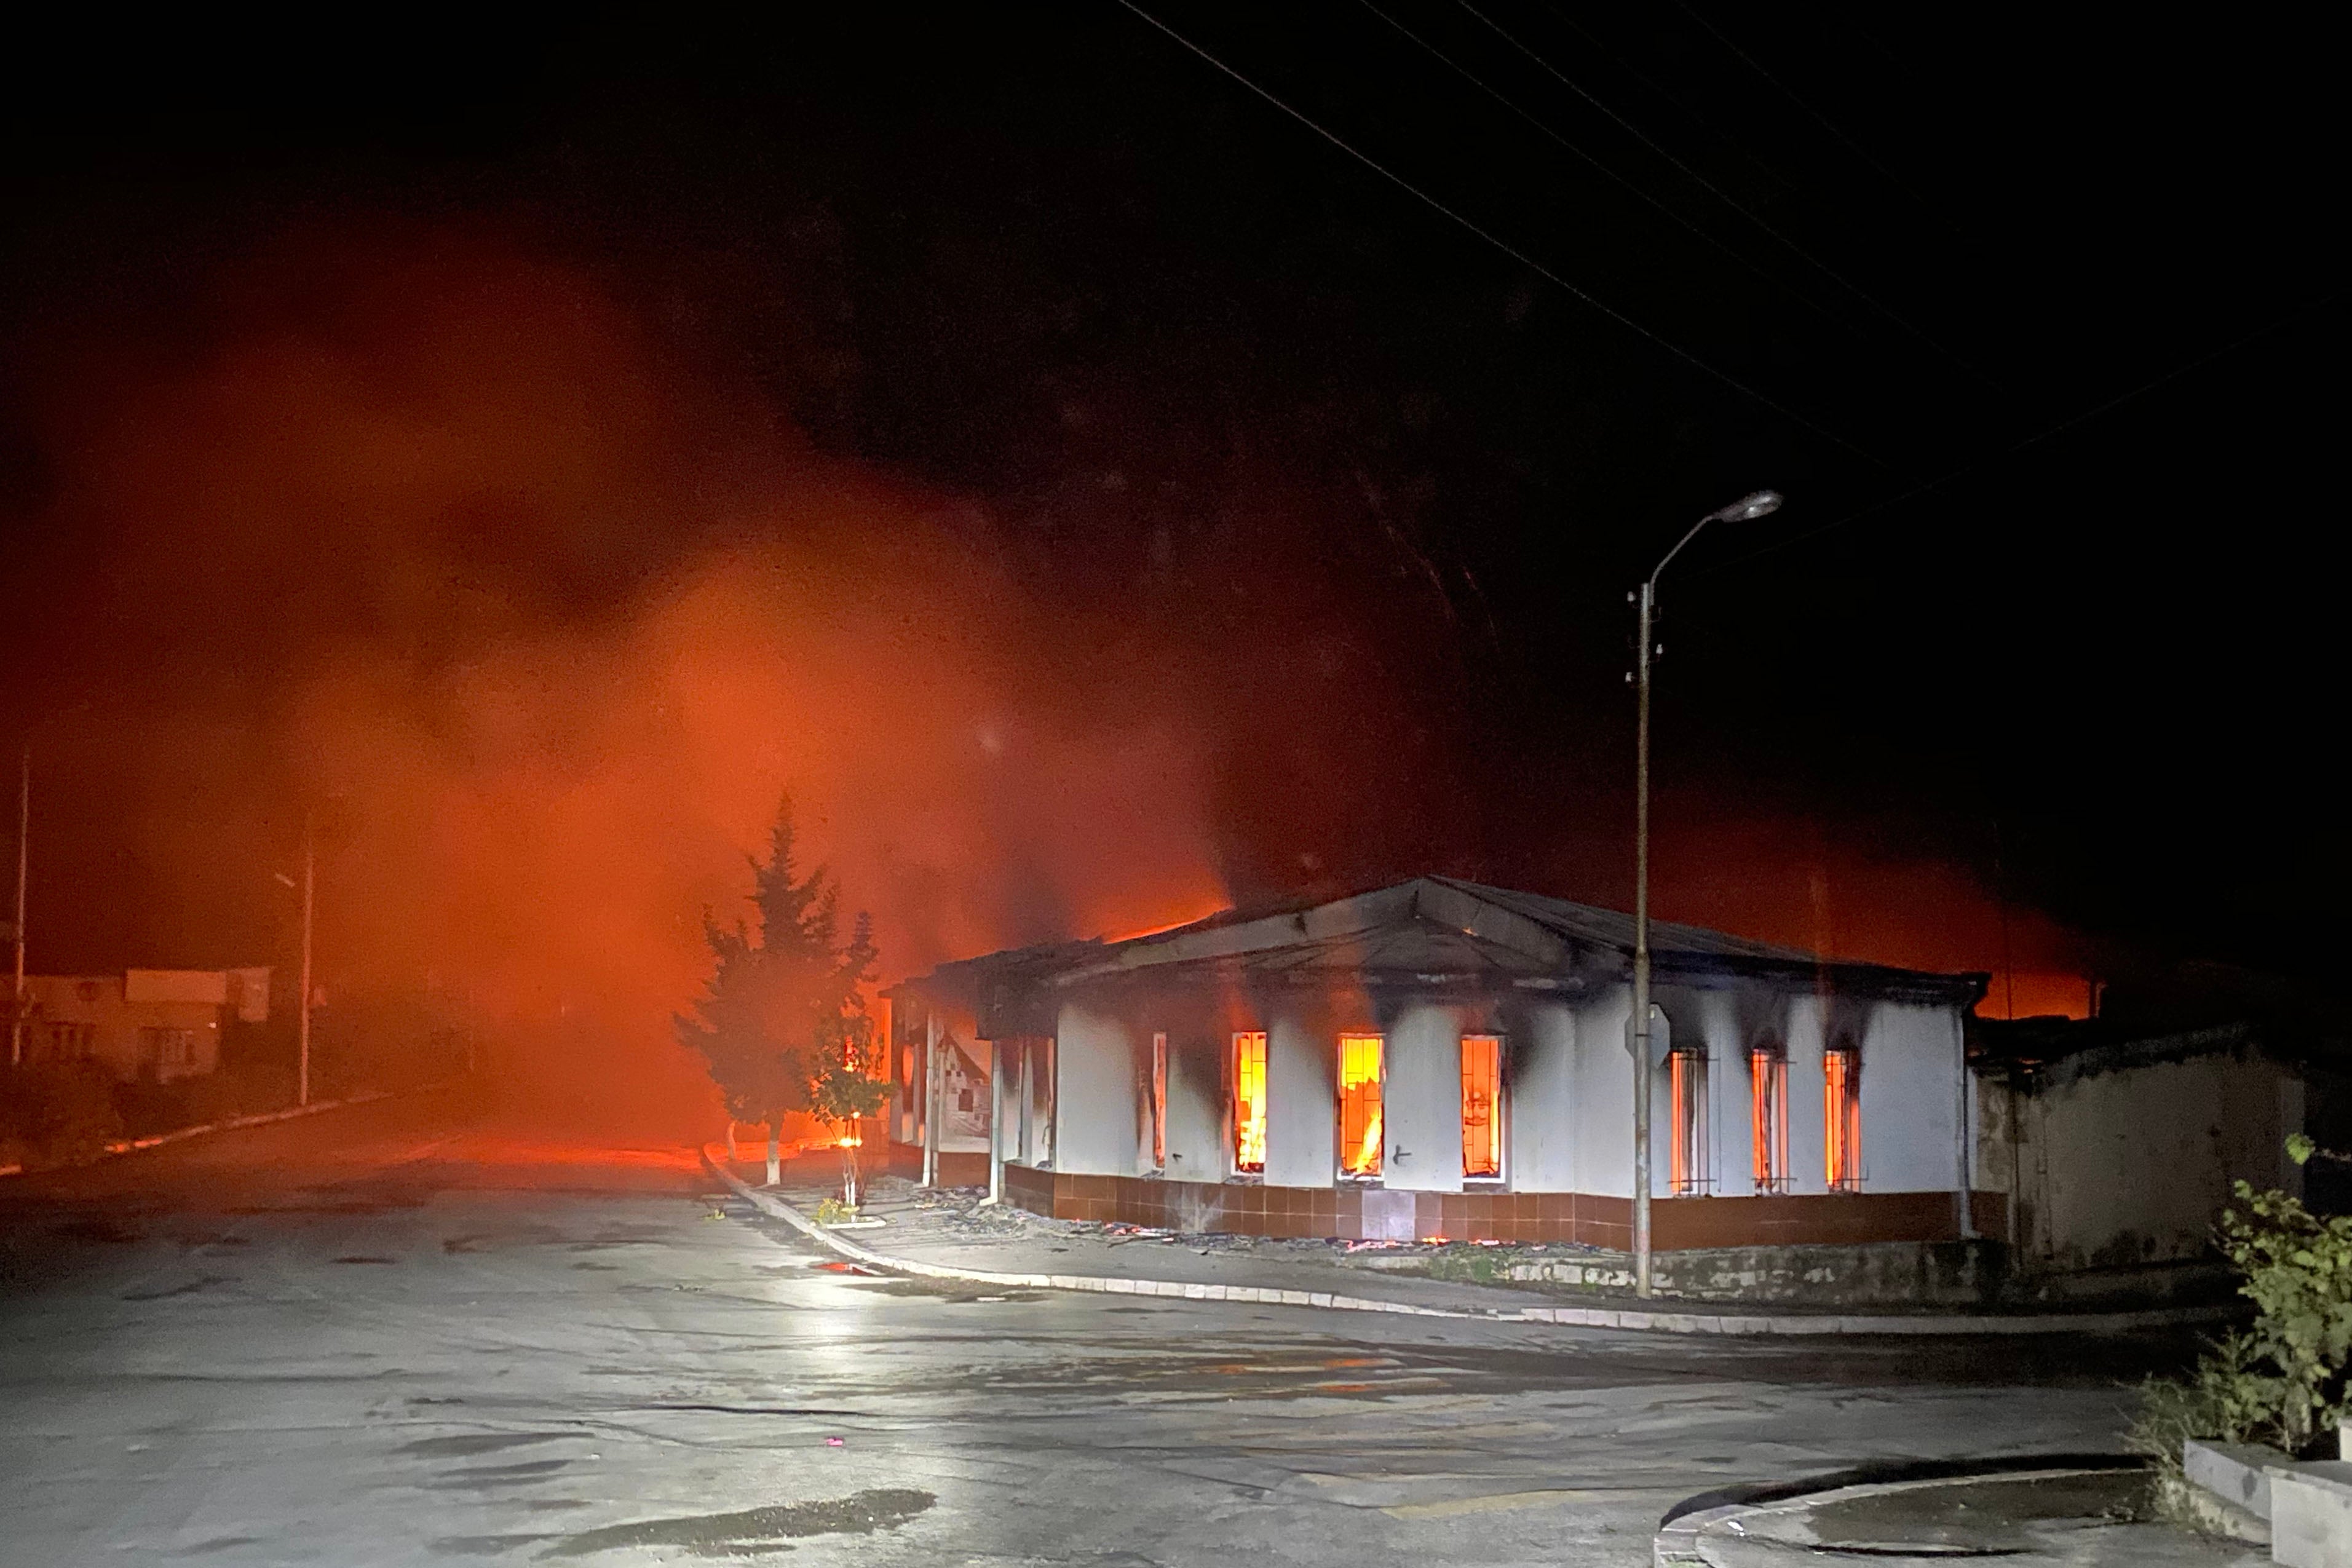 Սանիտարական տեխնիկա, սալիկներ և այլ կենցաղային իրեր պարունակող խանութ է այրվել Ստեփանակերտում 2020թ․ հոկտեմբերի 3-ի գիշերը՝ քաղաքի հրթիռակոծումից հետո: 